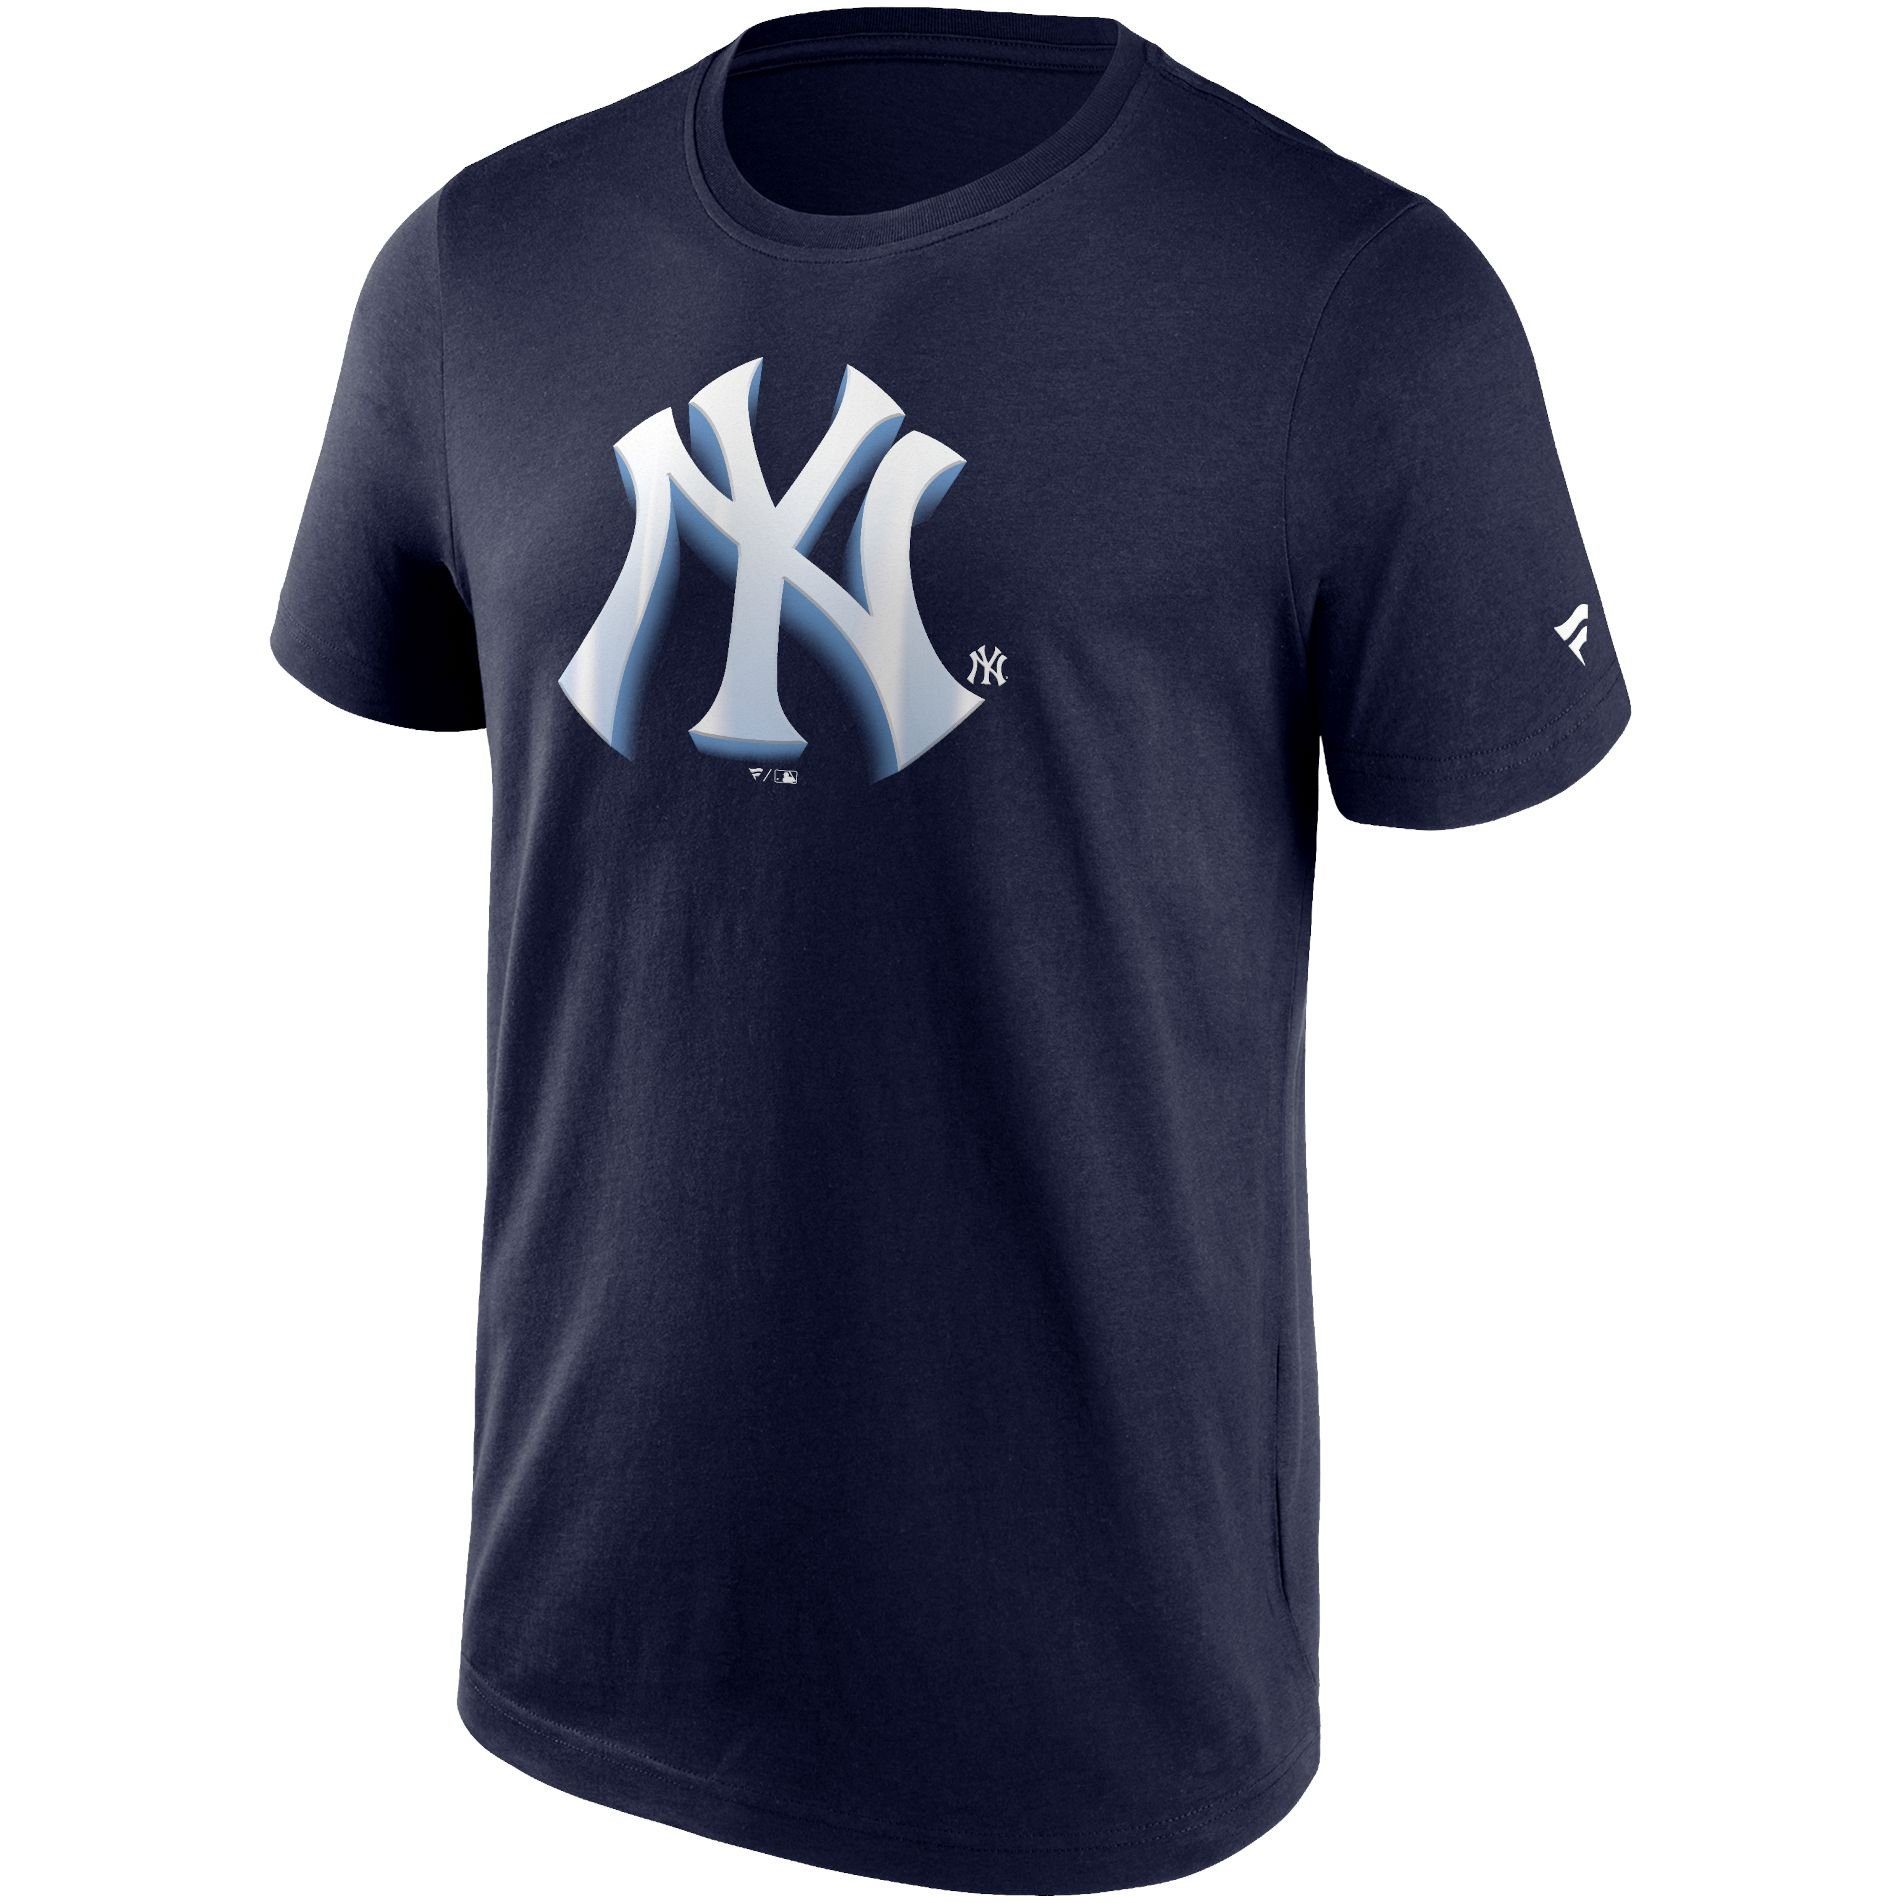 Fanatics Print-Shirt CHROME LOGO MLB NHL NFL Teams New York Yankees